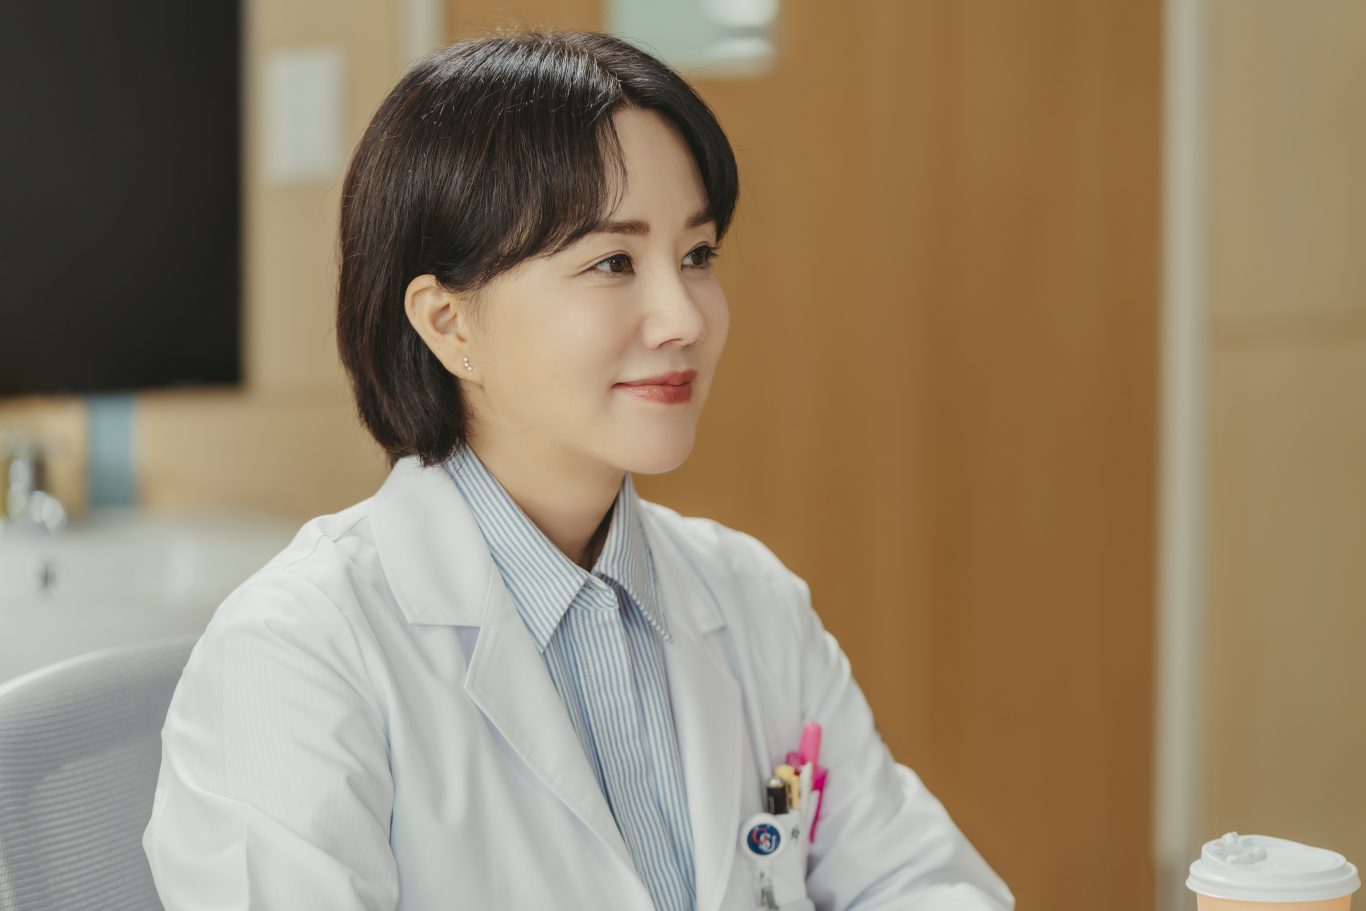 映画・ドラマに映る韓国女性のリアル(7)離婚というハッピーエンド、ドラマ「医師チャ・ジョンスク」